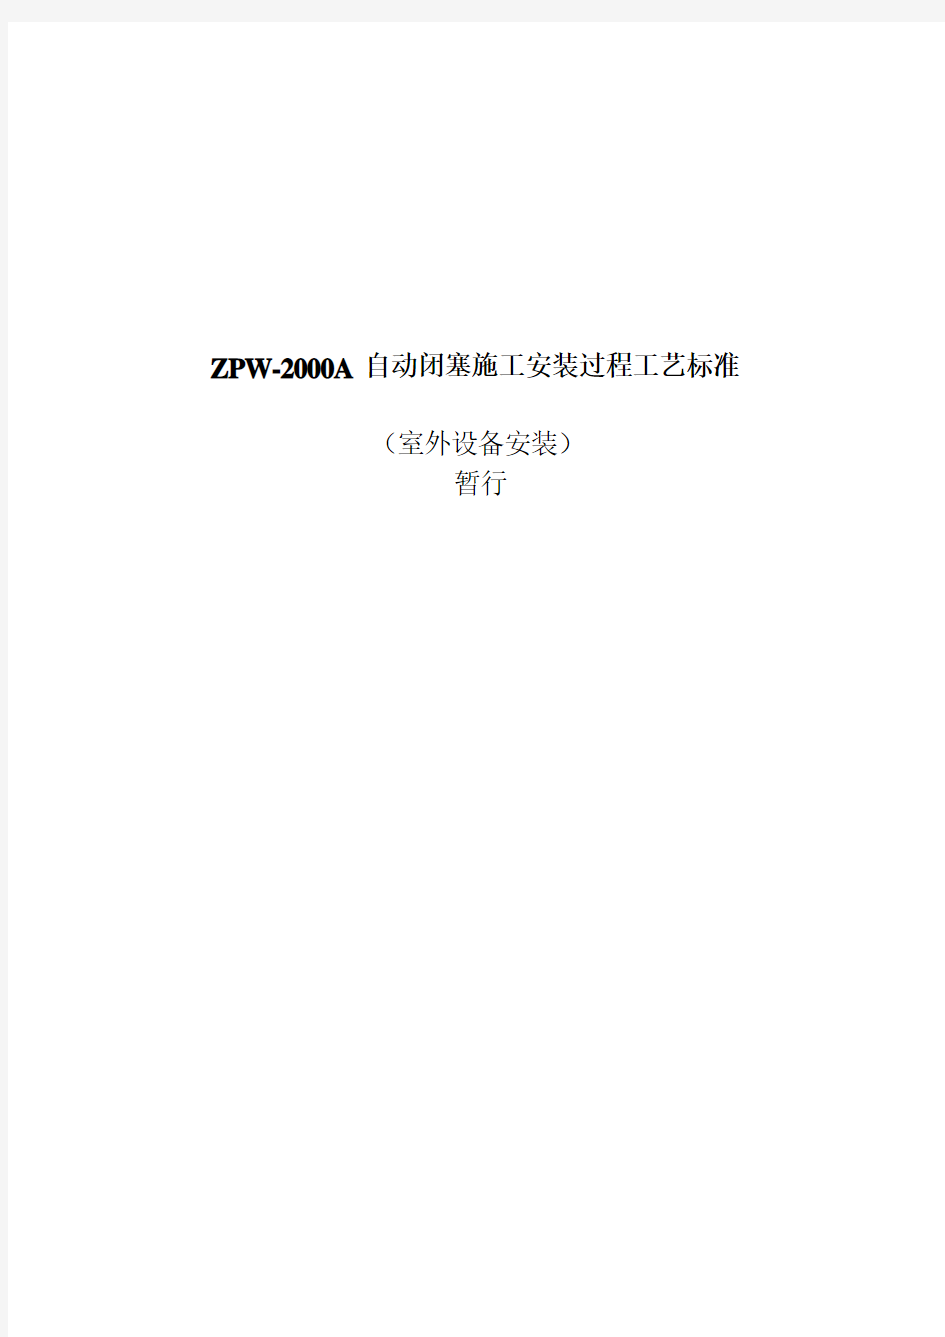 【铁道信号】ZPW-2000A自动闭塞施工安装过程工艺标准